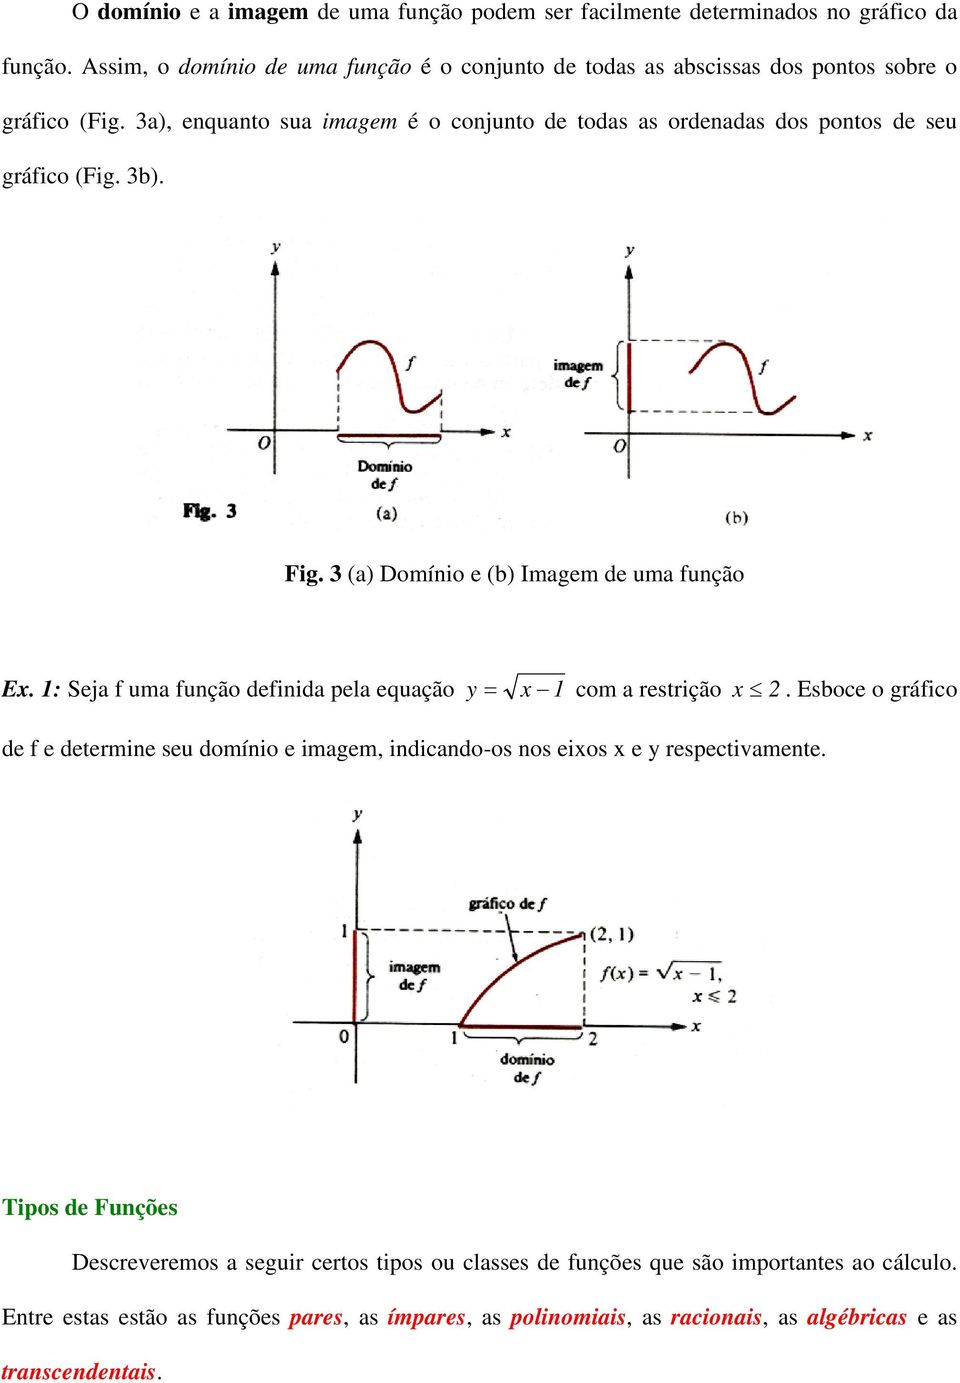 3a), equato sua imagem é o cojuto de todas as ordeadas dos potos de seu gráfico (Fig. 3). Fig. 3 (a) Domíio e () Imagem de uma fução E.